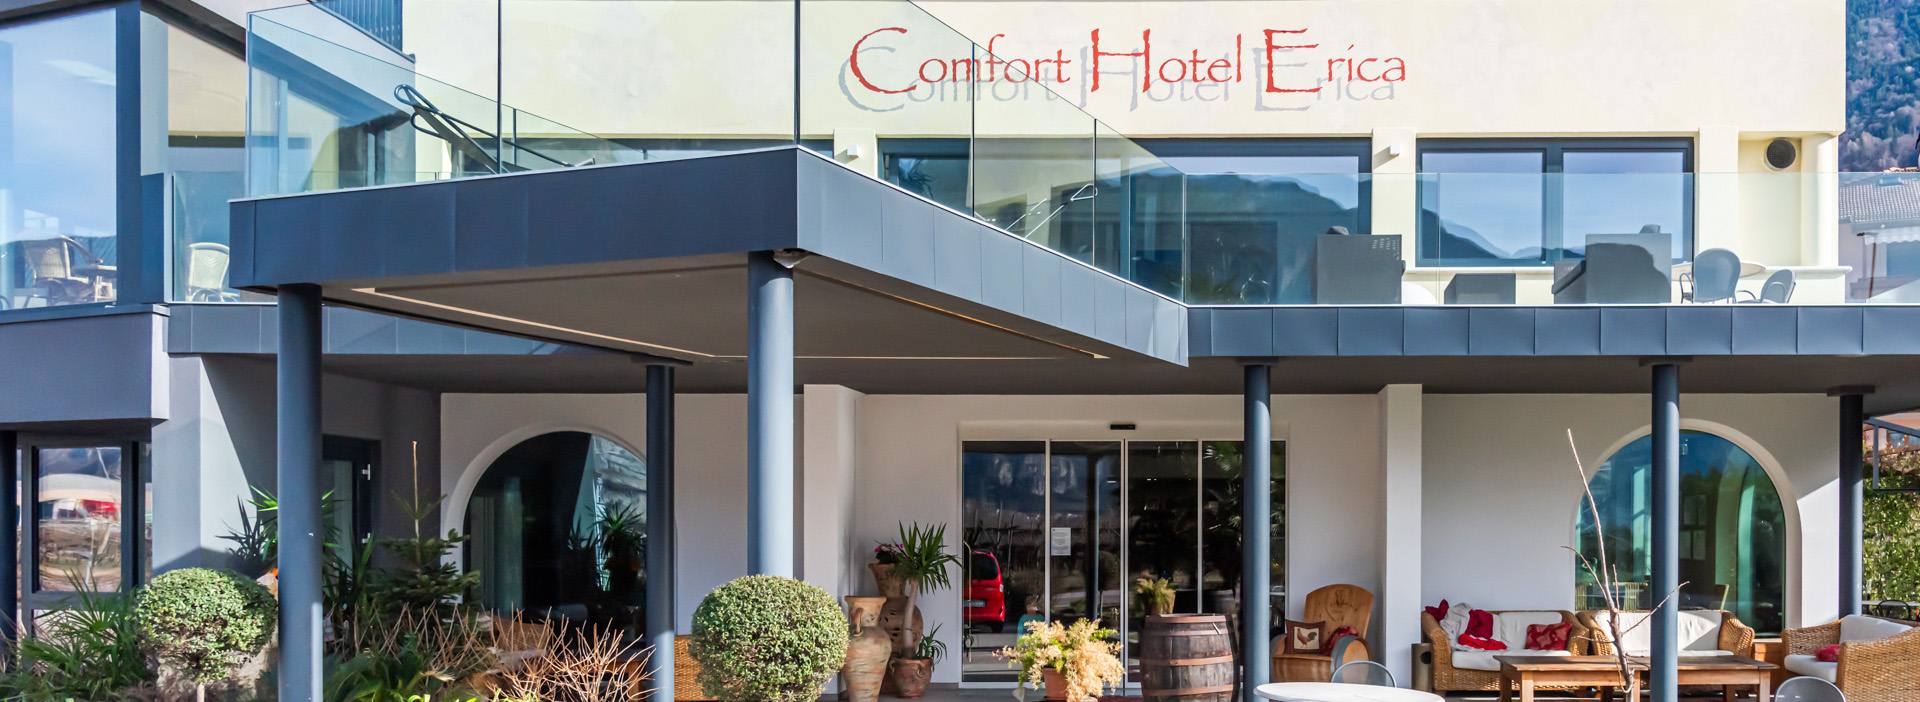 Comfort Hotel Erica